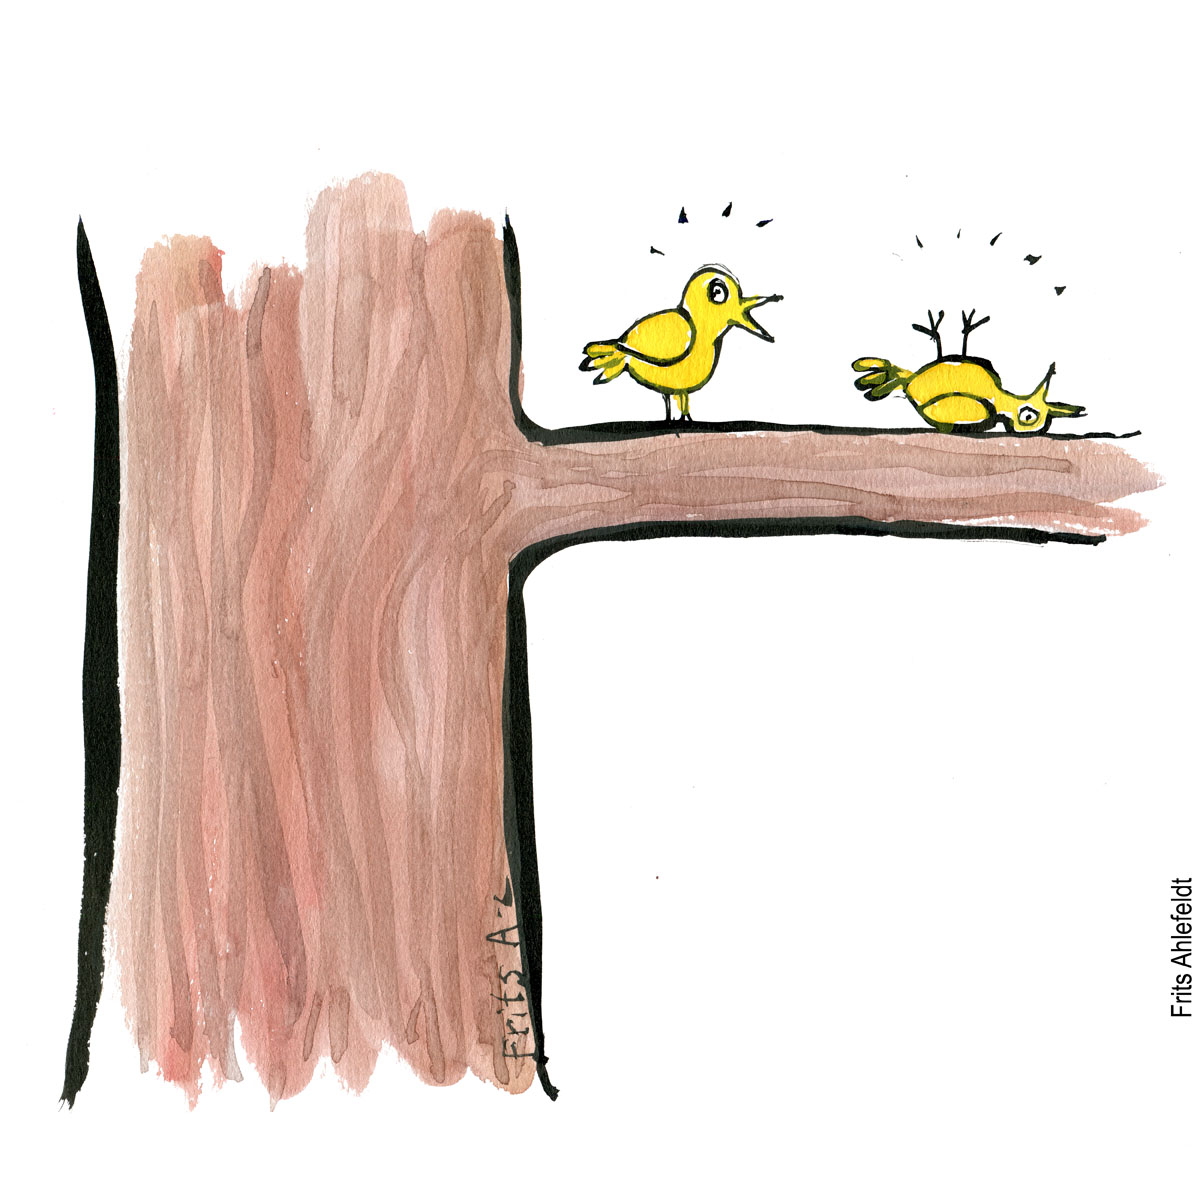 Tegning af en levende og en død kanariefugl. Biodiversitet illustration af Frits Ahlefeldt